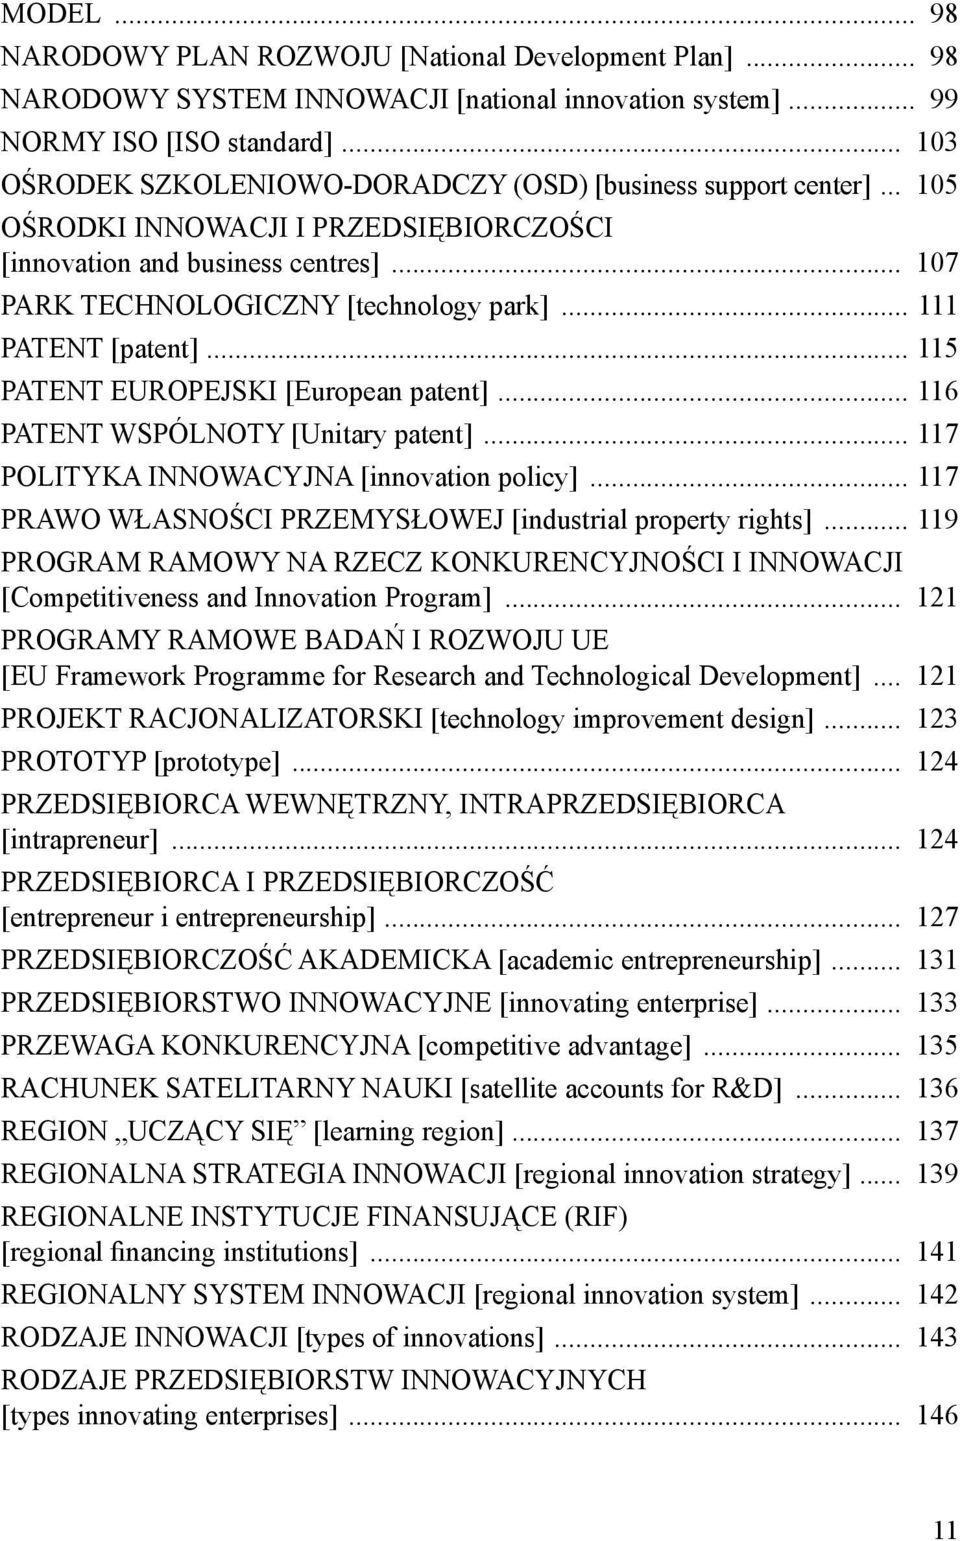 .. 111 PATENT [patent]... 115 PATENT EUROPEJSKI [European patent]... 116 PATENT WSPÓLNOTY [Unitary patent]... 117 POLITYKA INNOWACYJNA [innovation policy].